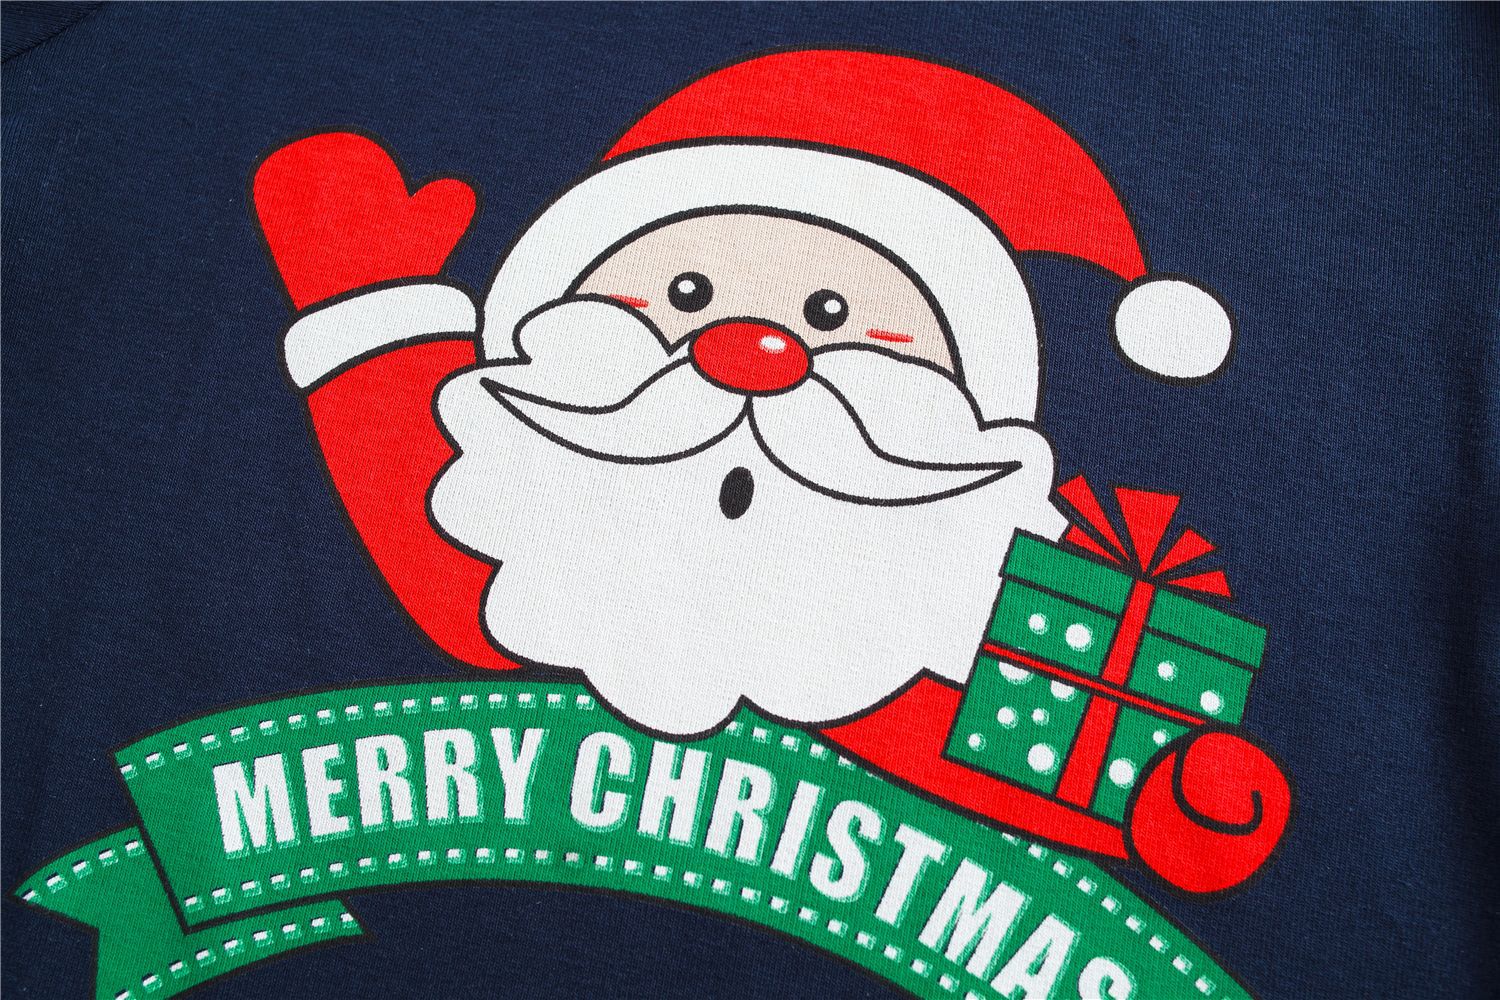 Merry Christmas Santa Claus Print Christmas Family Black Pajamas Set